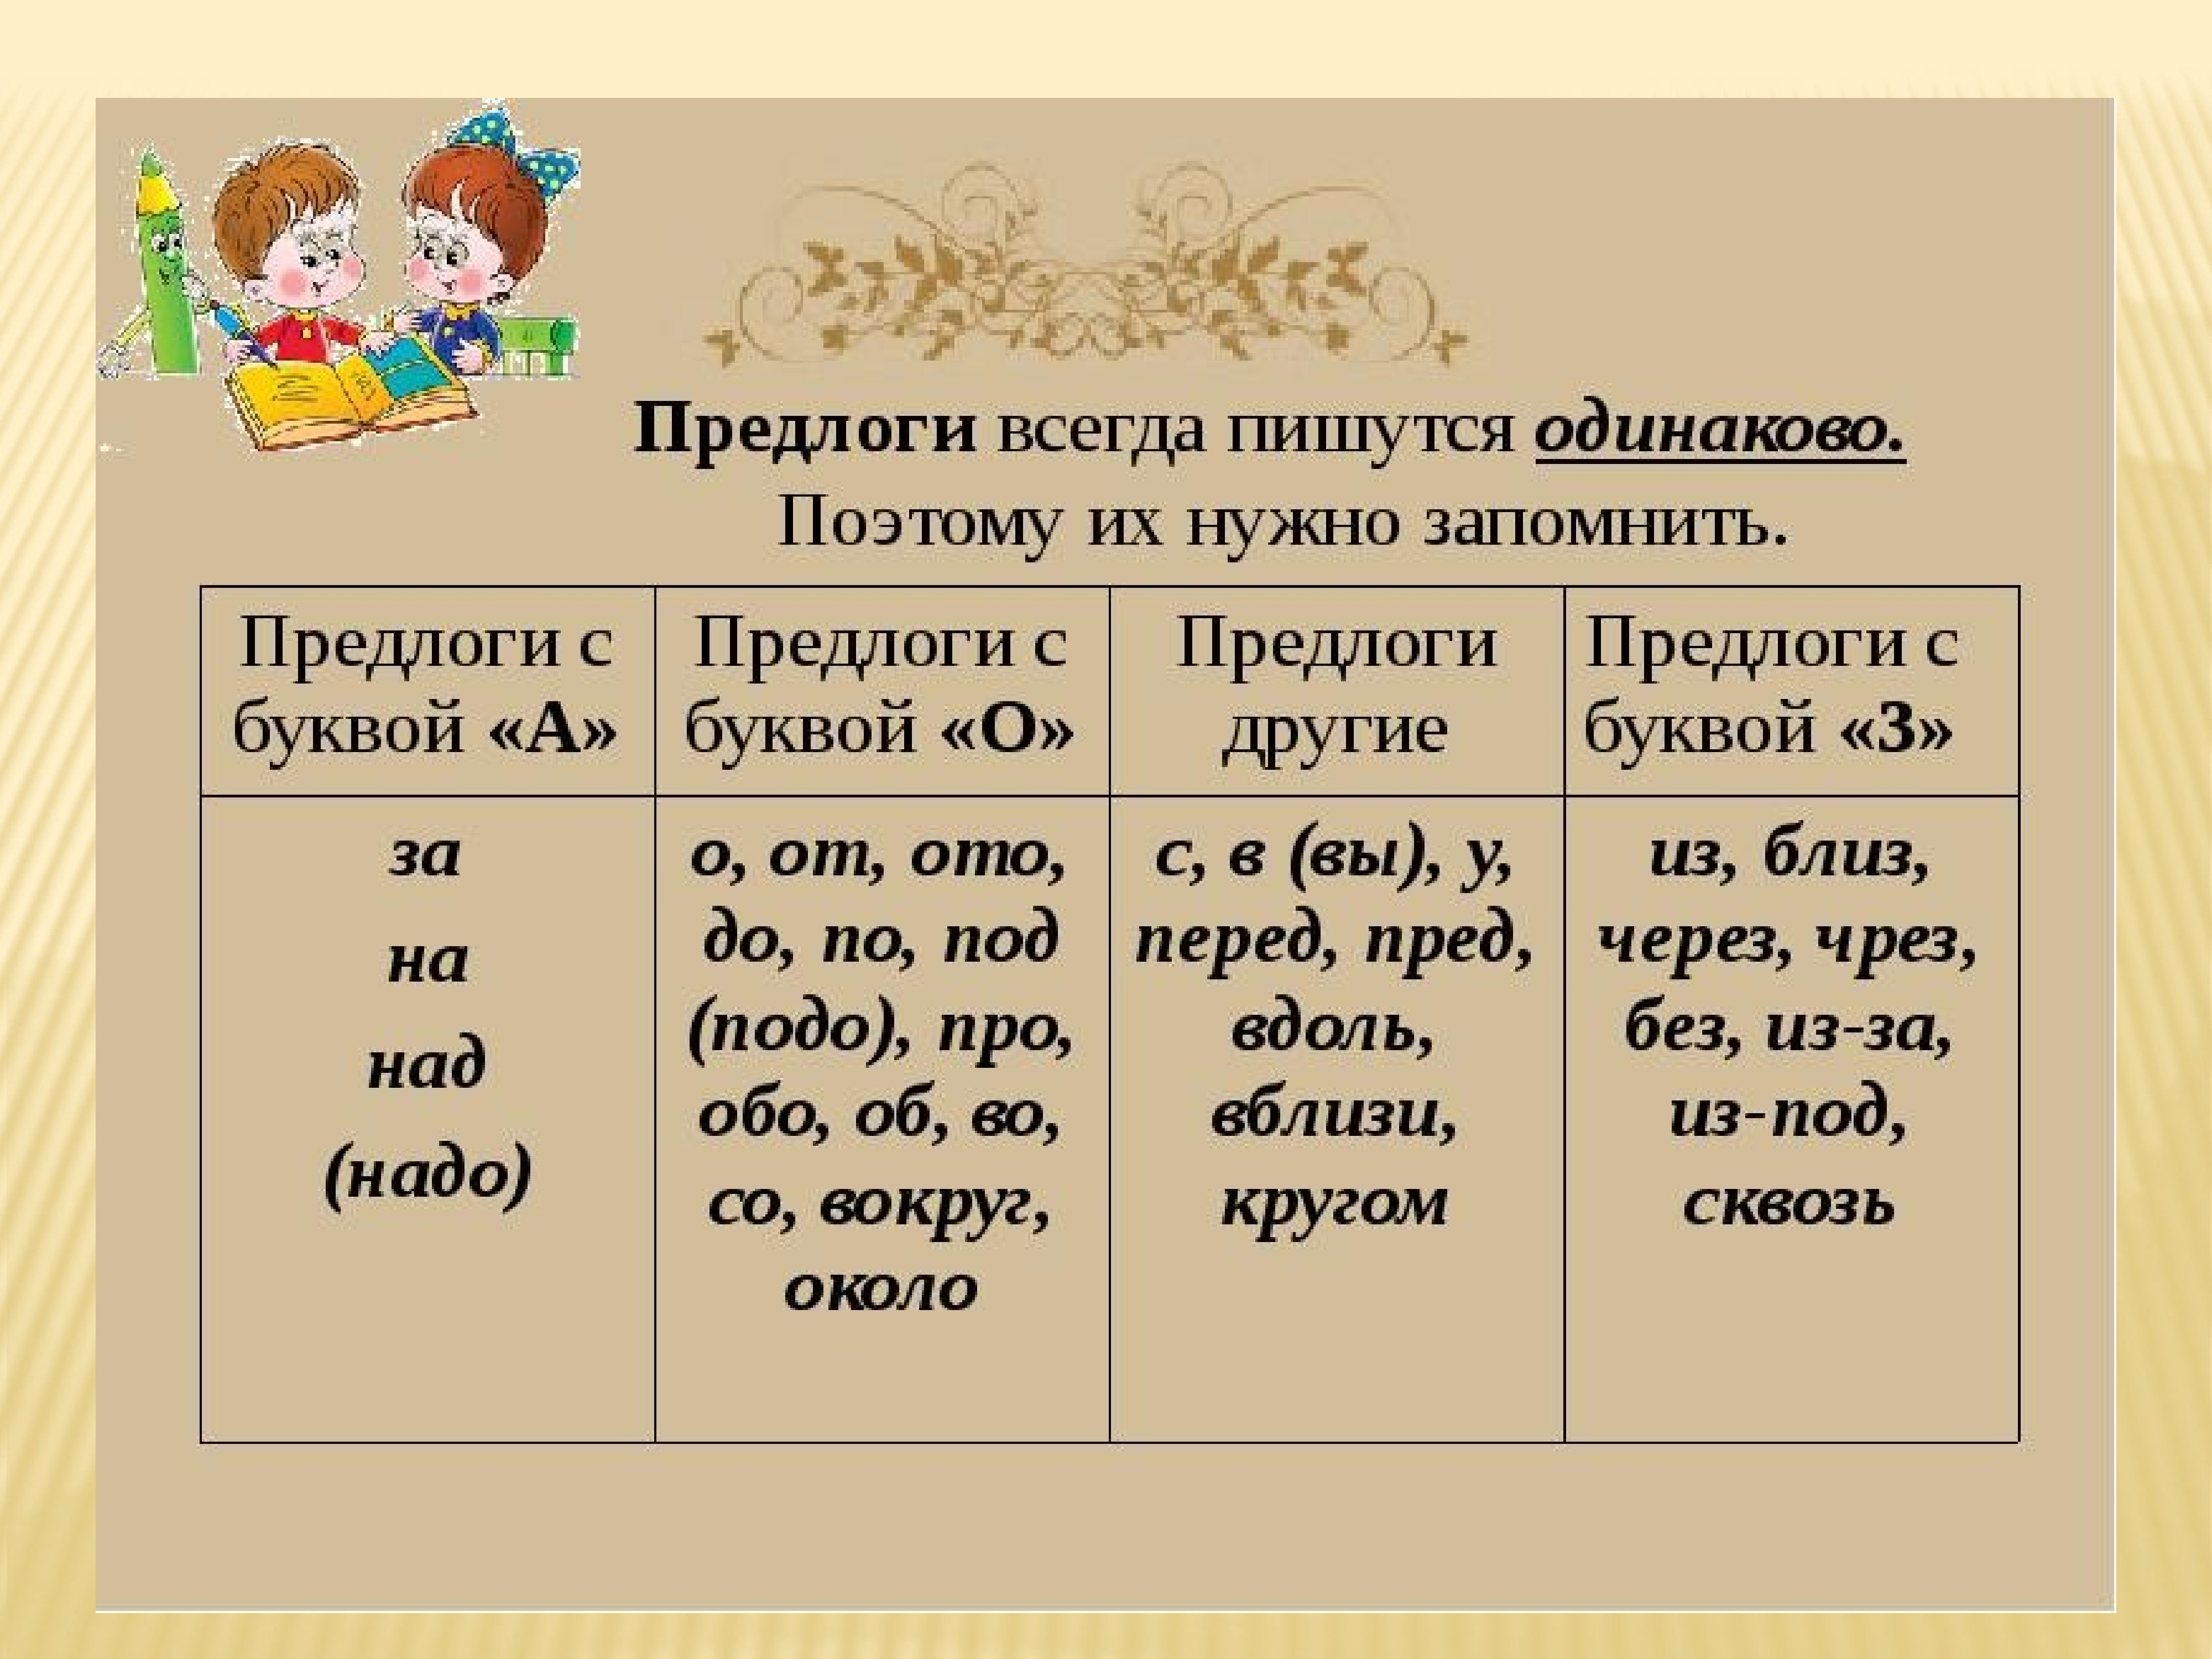 Надо это предлог. Предлог. Предлоги в русском языке. Пердлоги в руском языке. Таблица предлогов в руском языке.